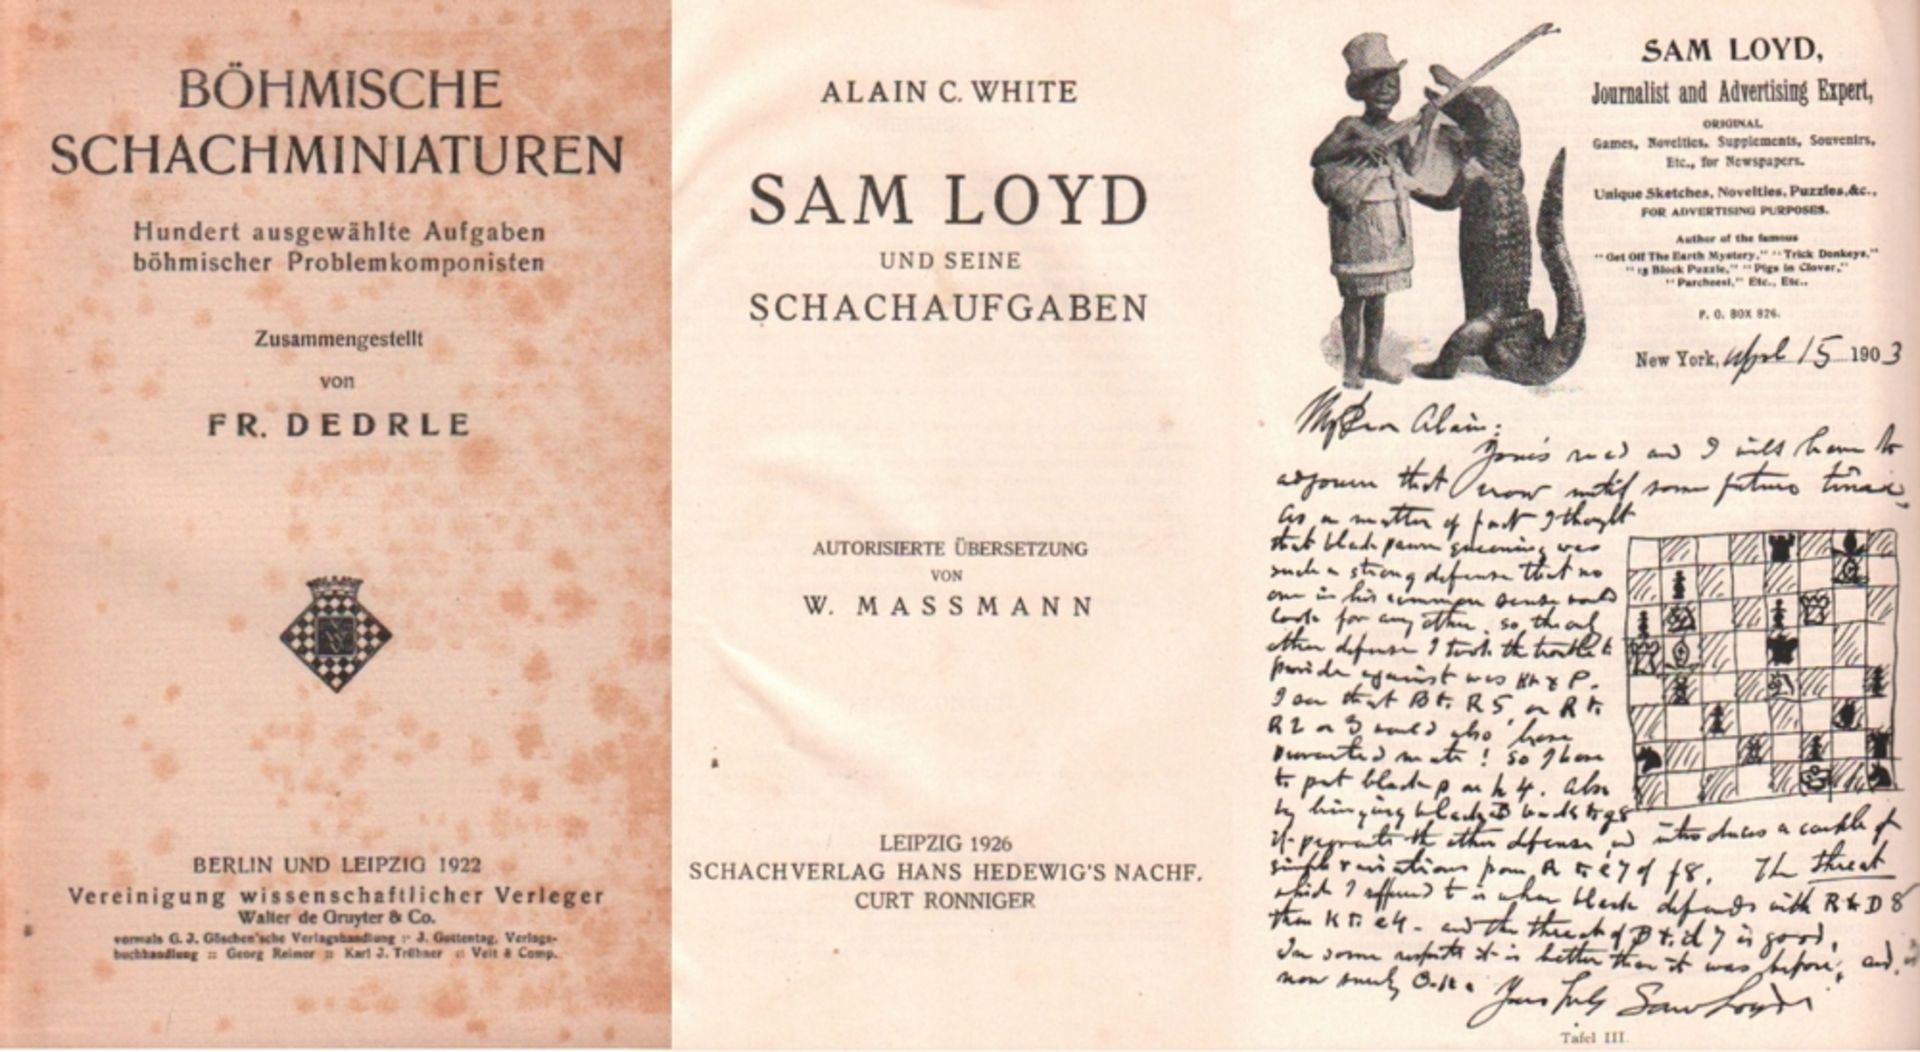 Loyd. White, Alain C(ampbell). Sam Loyd und seine Schachaufgaben ... Leipzig, Ronniger, 1926. 8°.